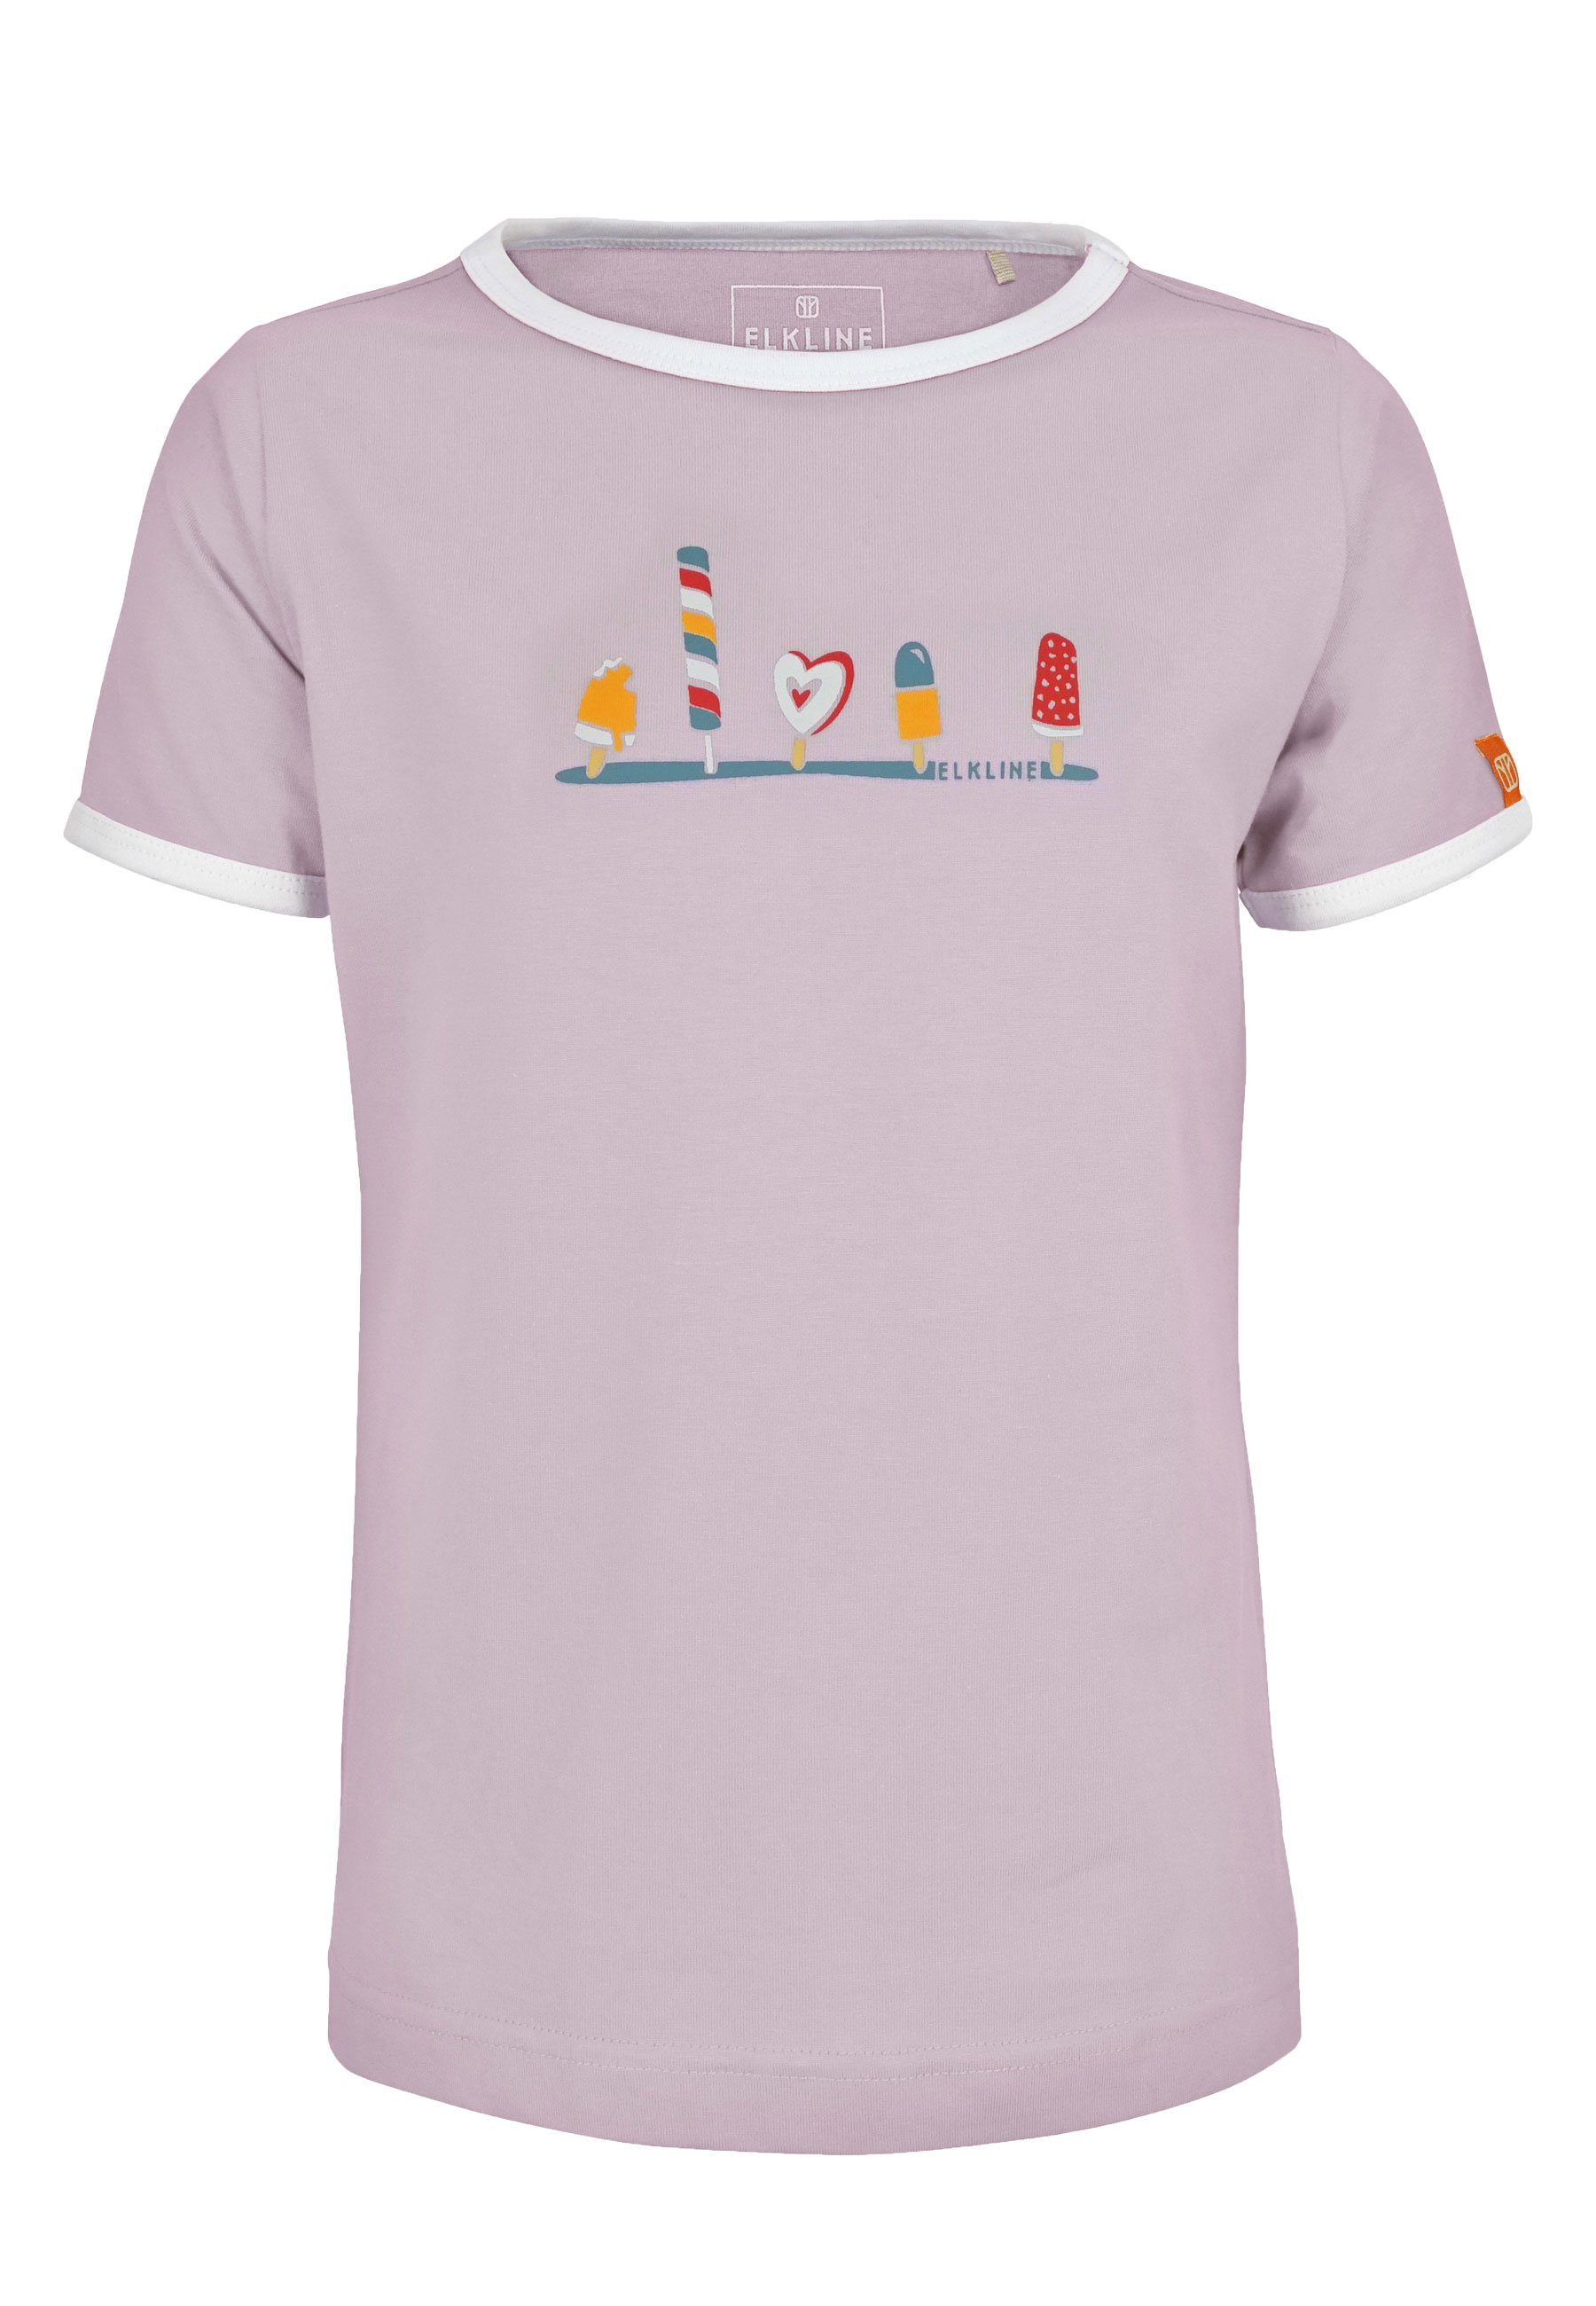 Elkline T-Shirt Icecream kurzarm Eis am Stiel Print lavender